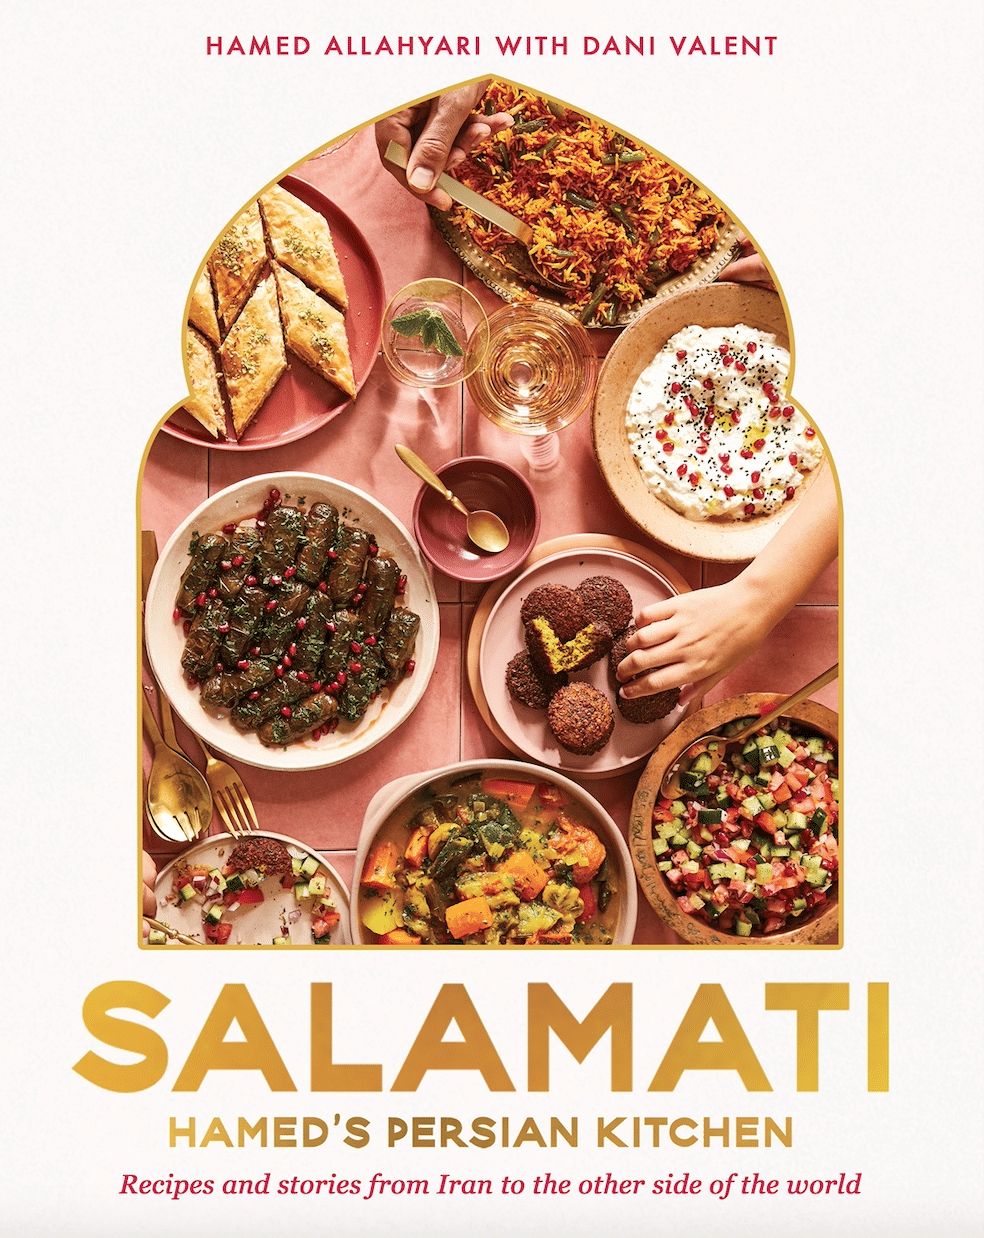 Salamati, favourite cookbook